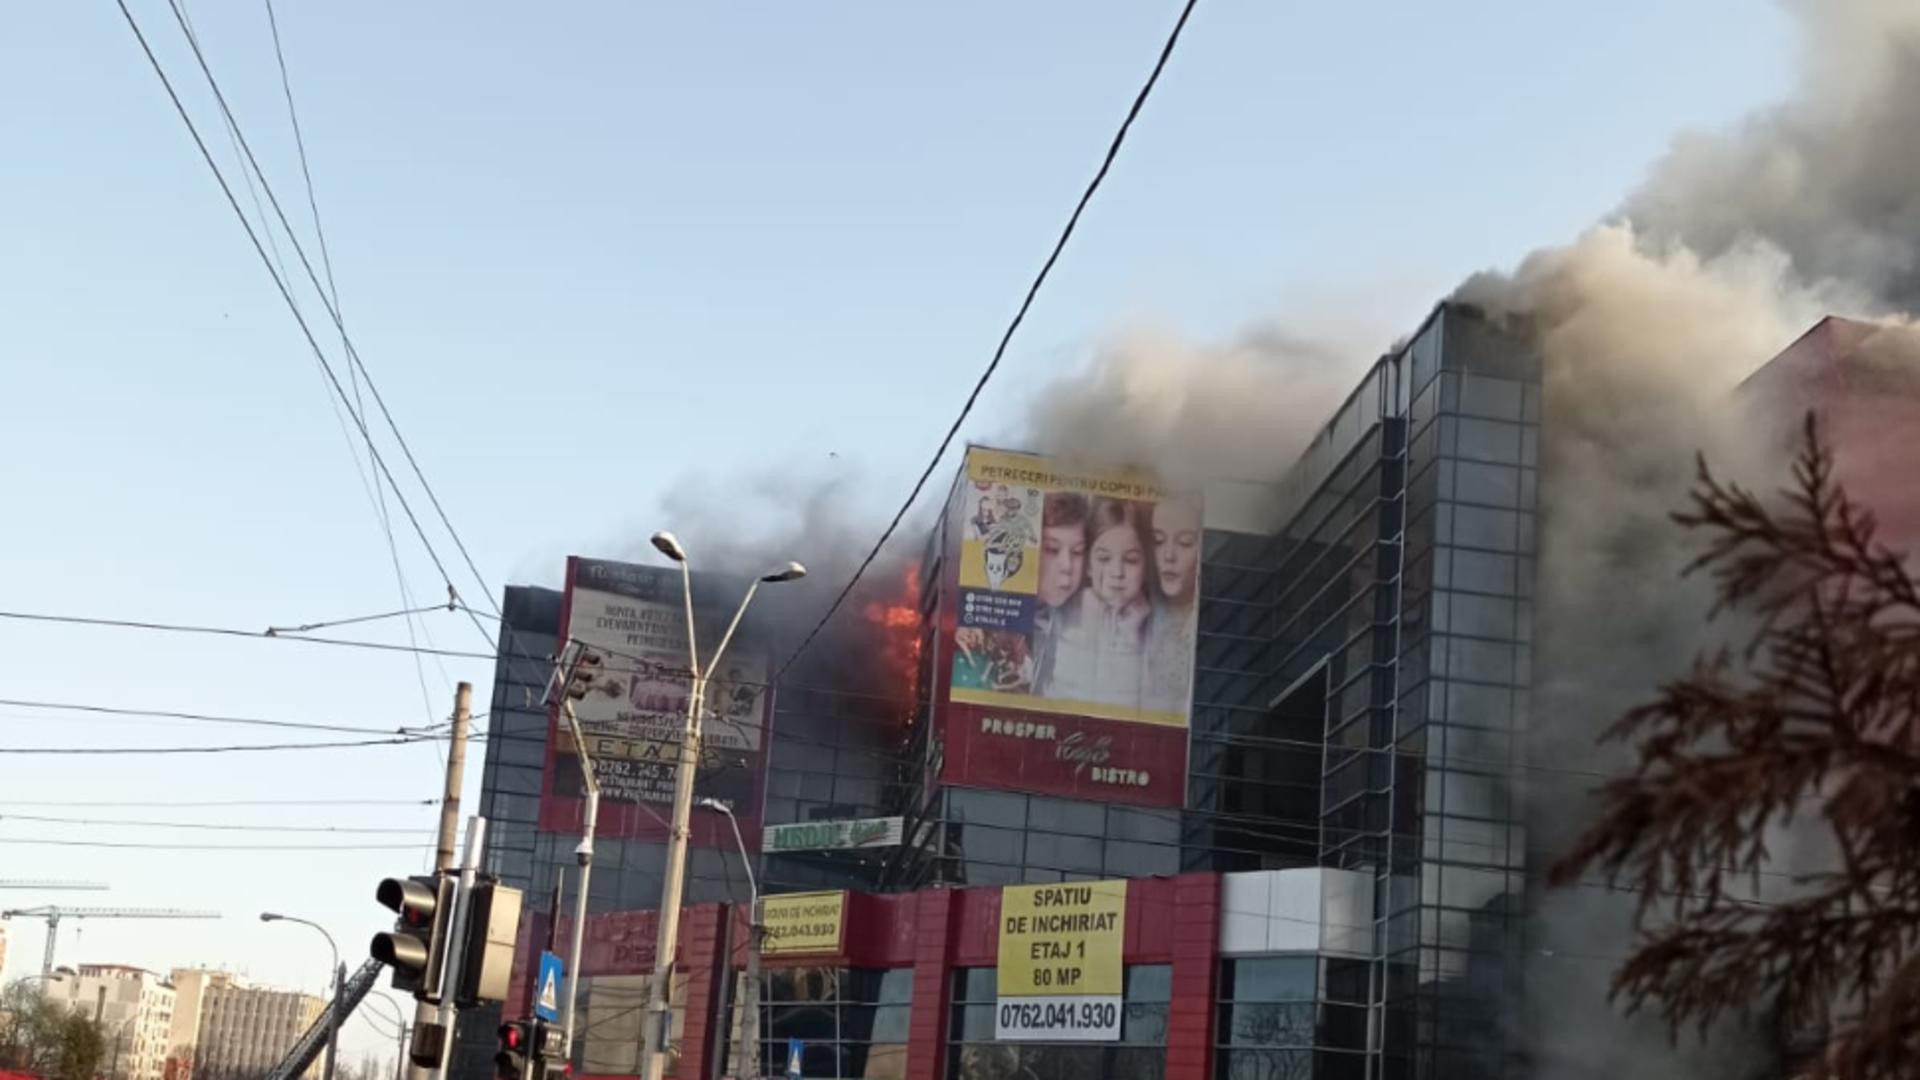 INCENDIU VIOLENT, în Capitală - arde un important centru comercial din sectorul 5